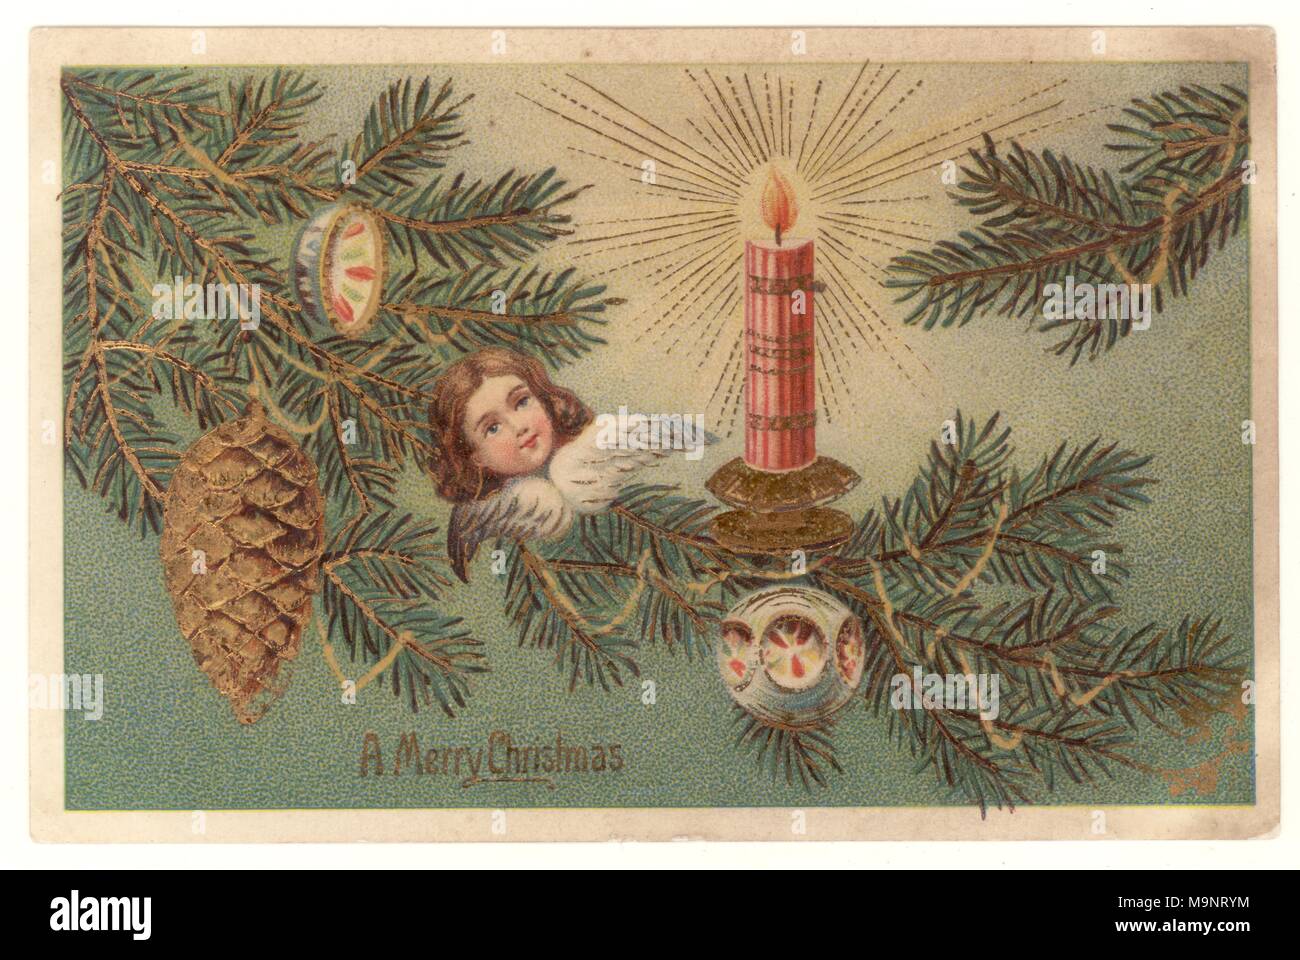 Salutations édouardien, carte postale représentant un arbre de Noël avec des décorations, qui souhaitent un joyeux Noël, 1906 posté 23 déc. Banque D'Images